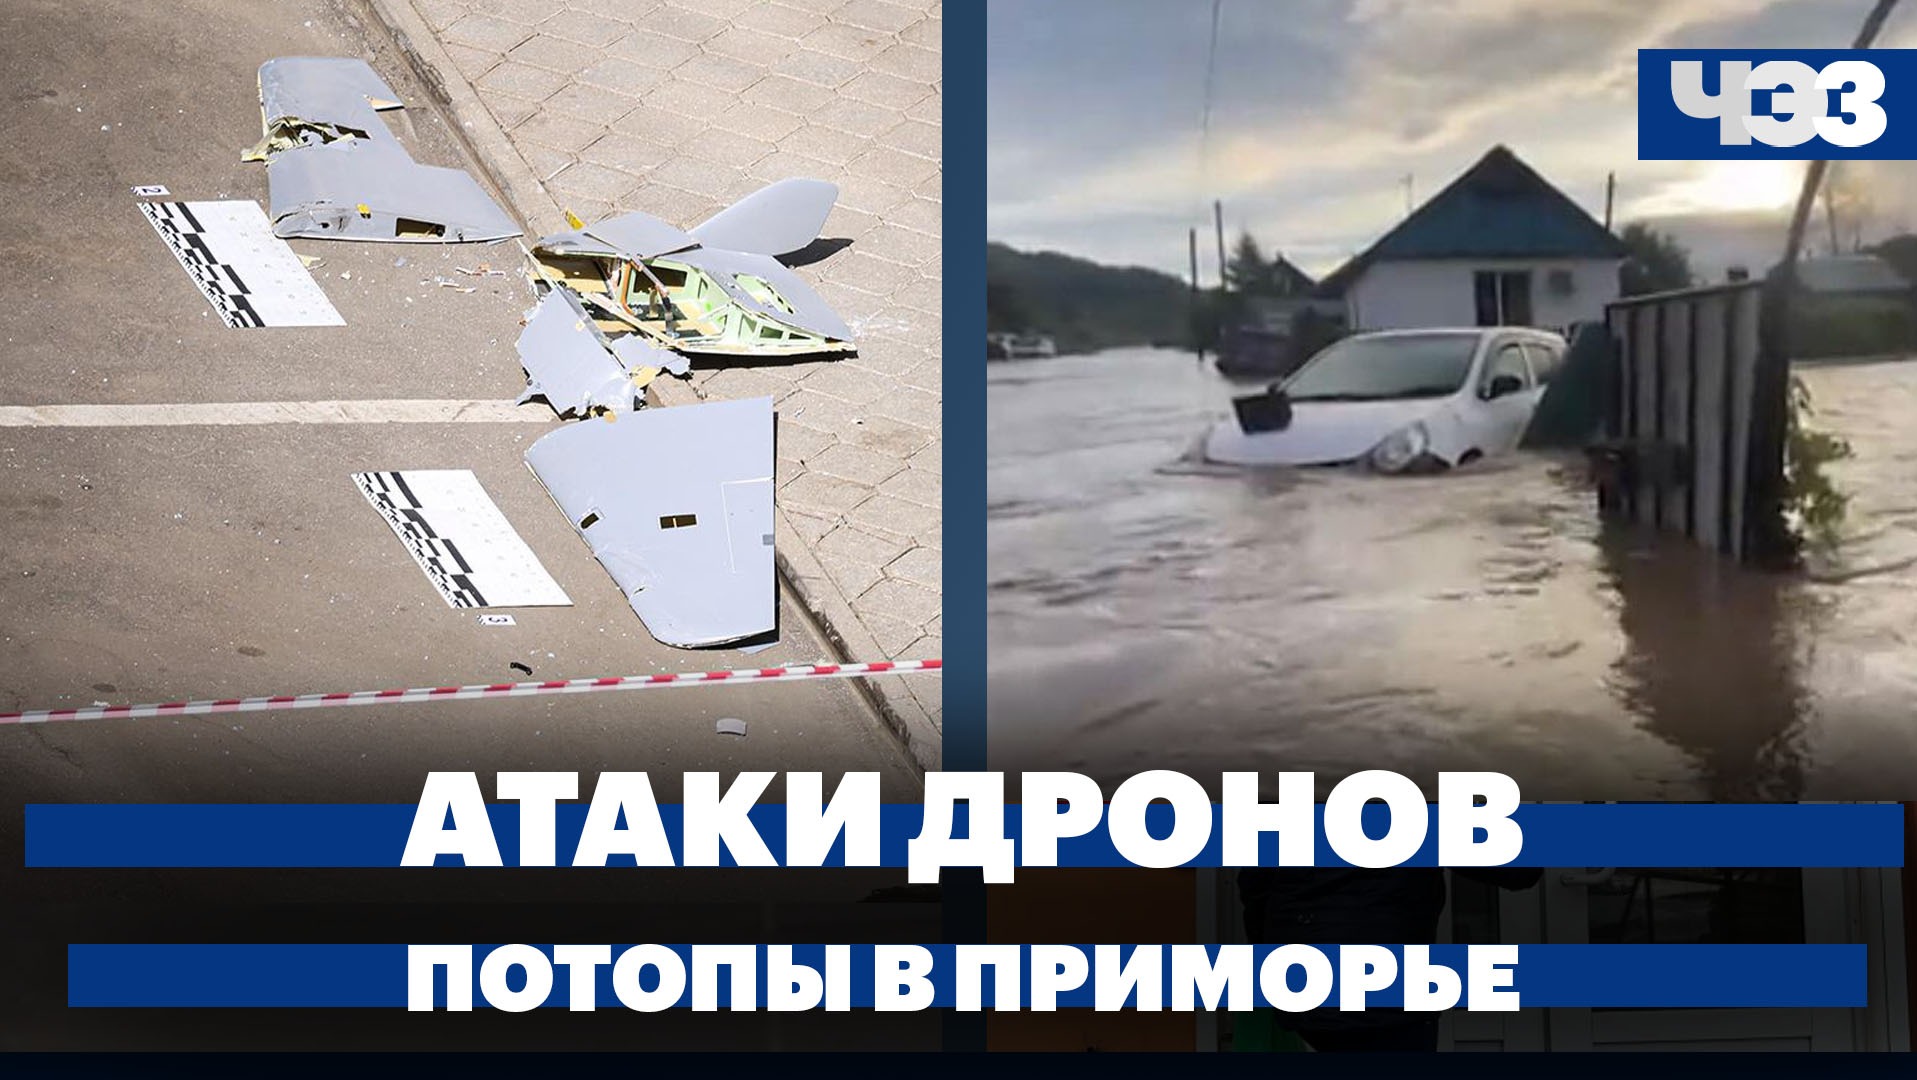 Число атак беспилотников на российские регионы превысило 500, рекордные потопы в Приморье